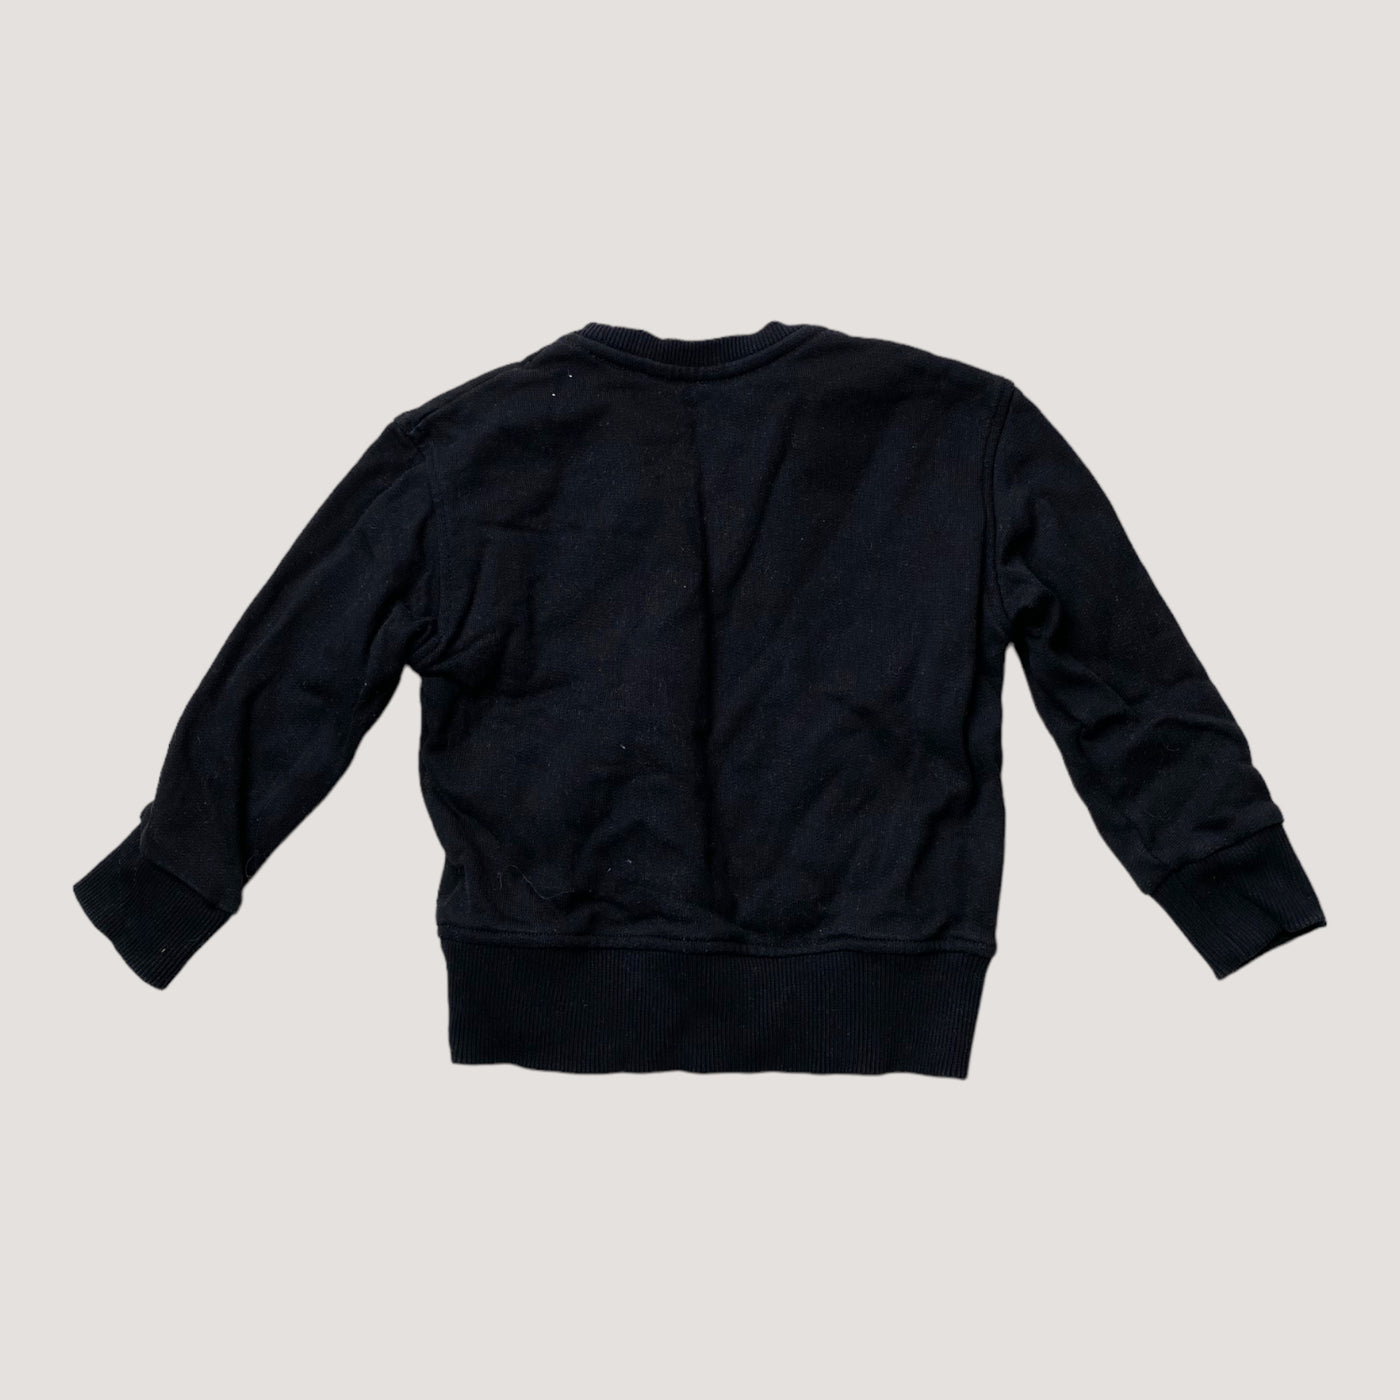 Metsola sweatshirt, black | 74/80cm